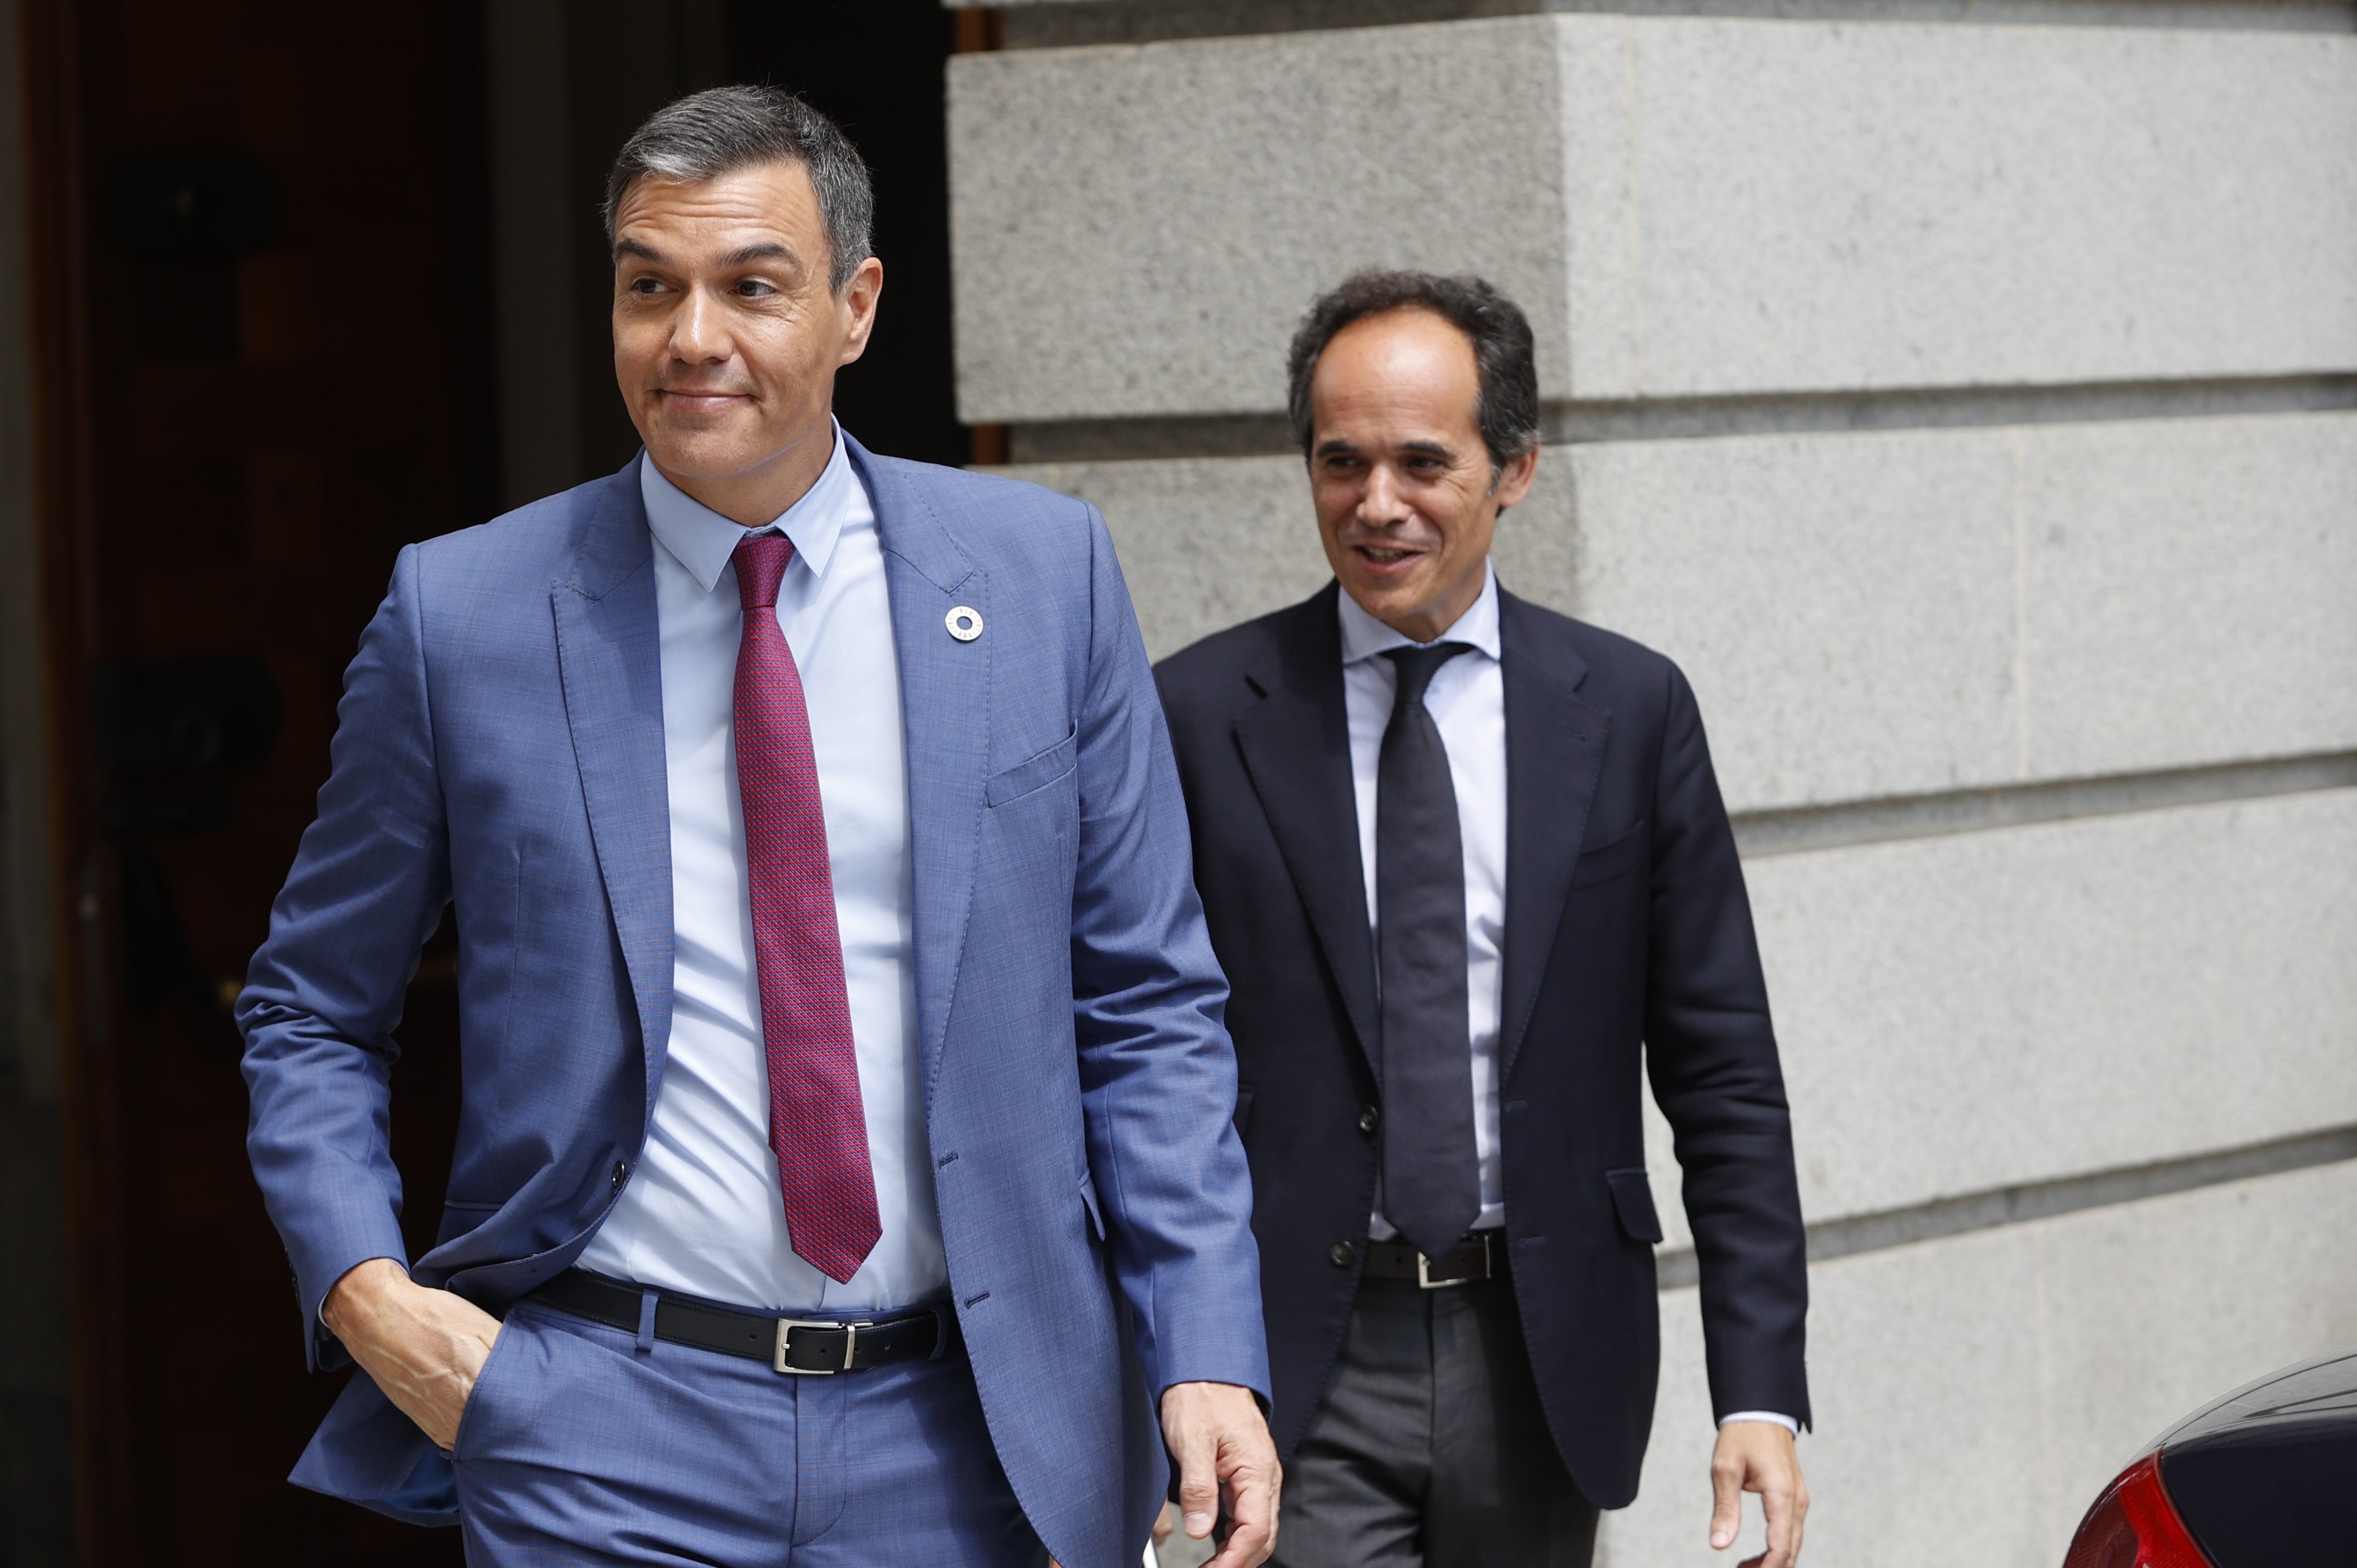 Foment reprocha a Sánchez que se haya olvidado de la economía productiva en el debate de la nación española